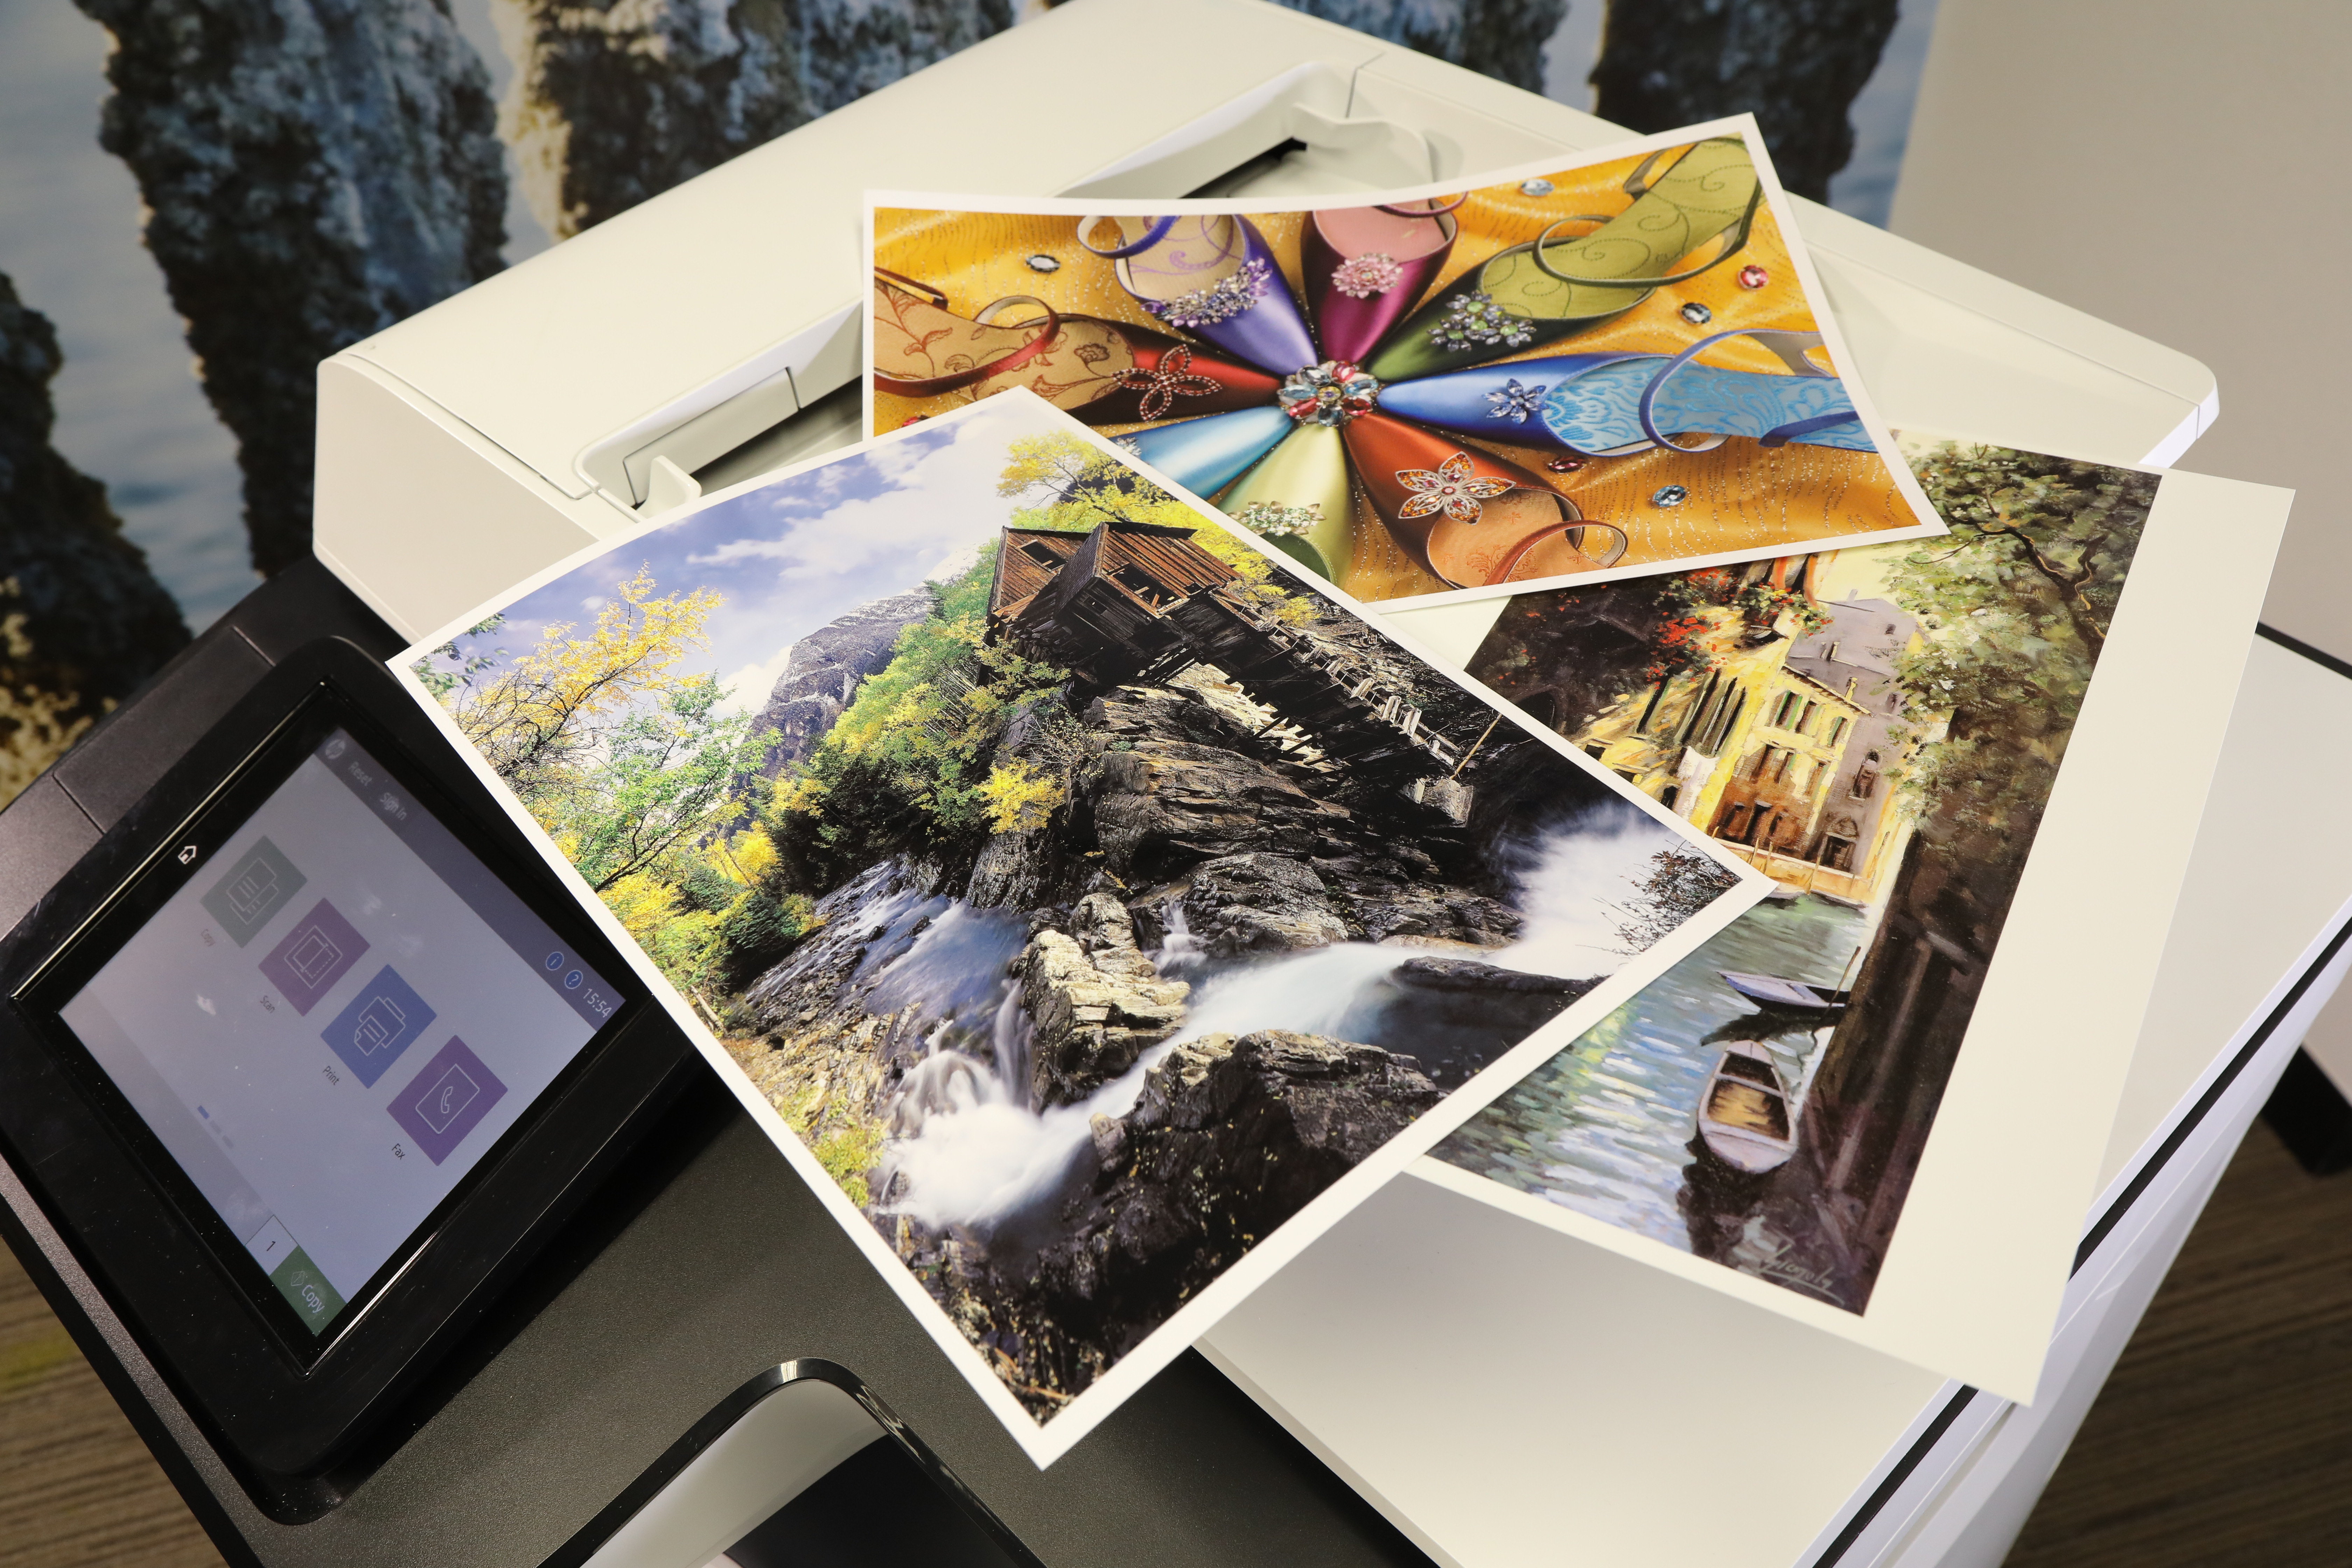 PageWide 打印機採用的顏料性油墨，能令圖像細緻鮮明，彩色相片打印效果媲美專業級鐳射打印機。